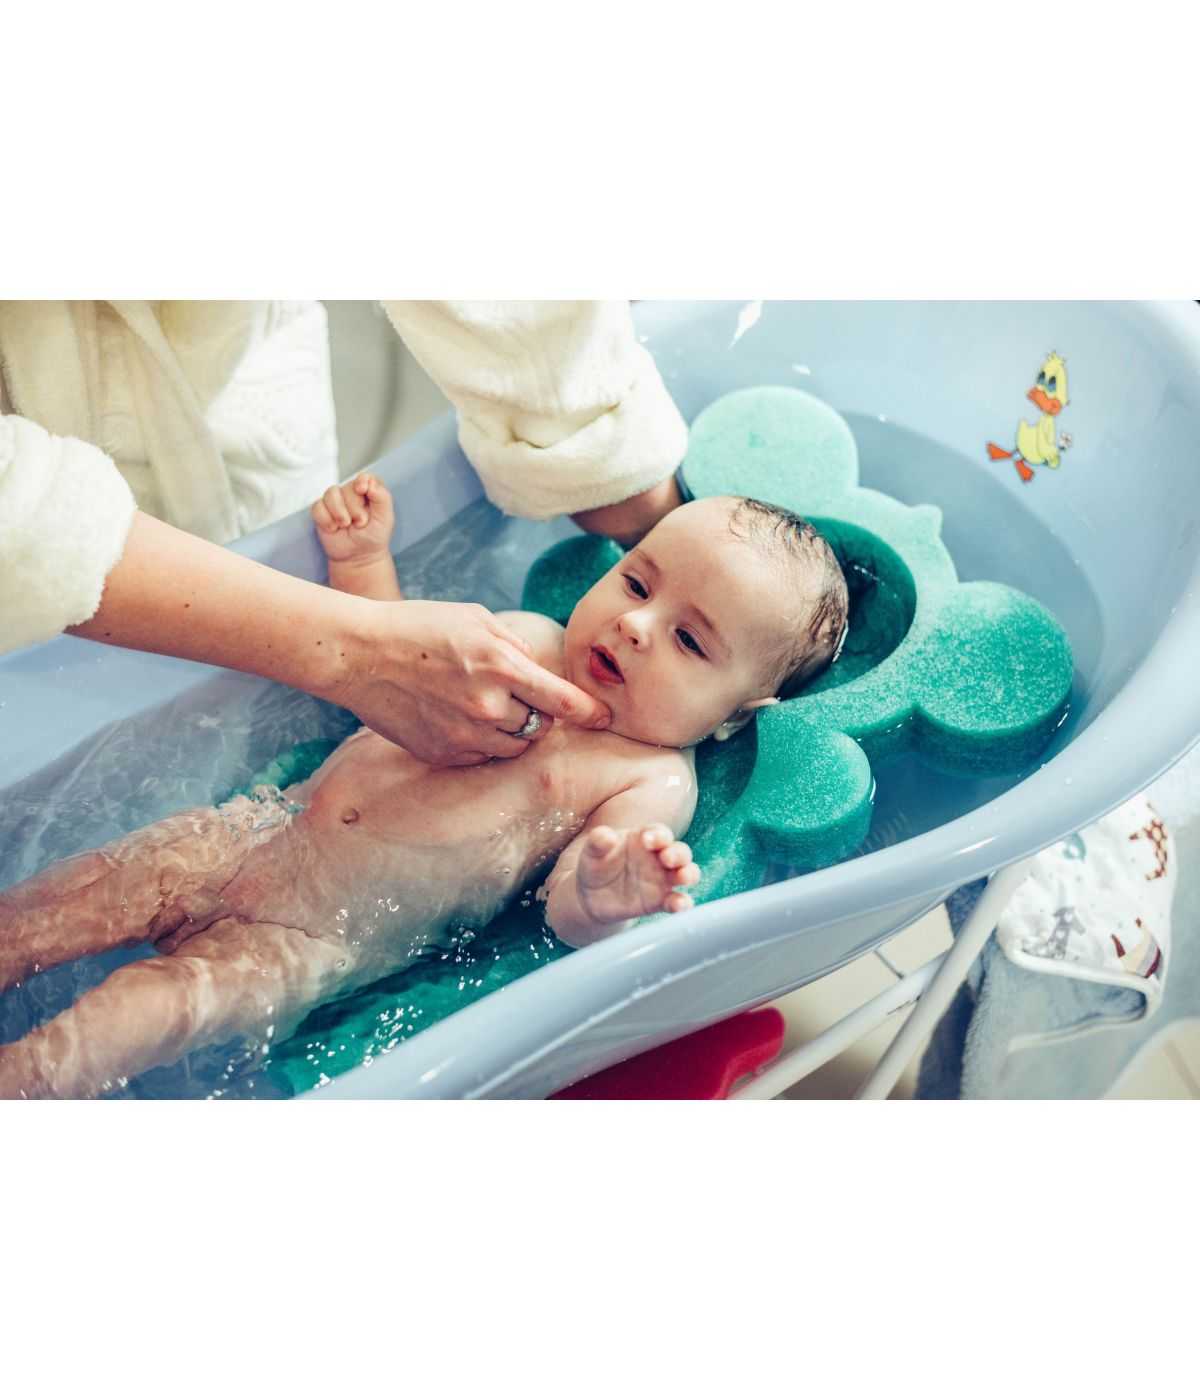 Качественная ванночка для новорожденного. правильный выбор мамы